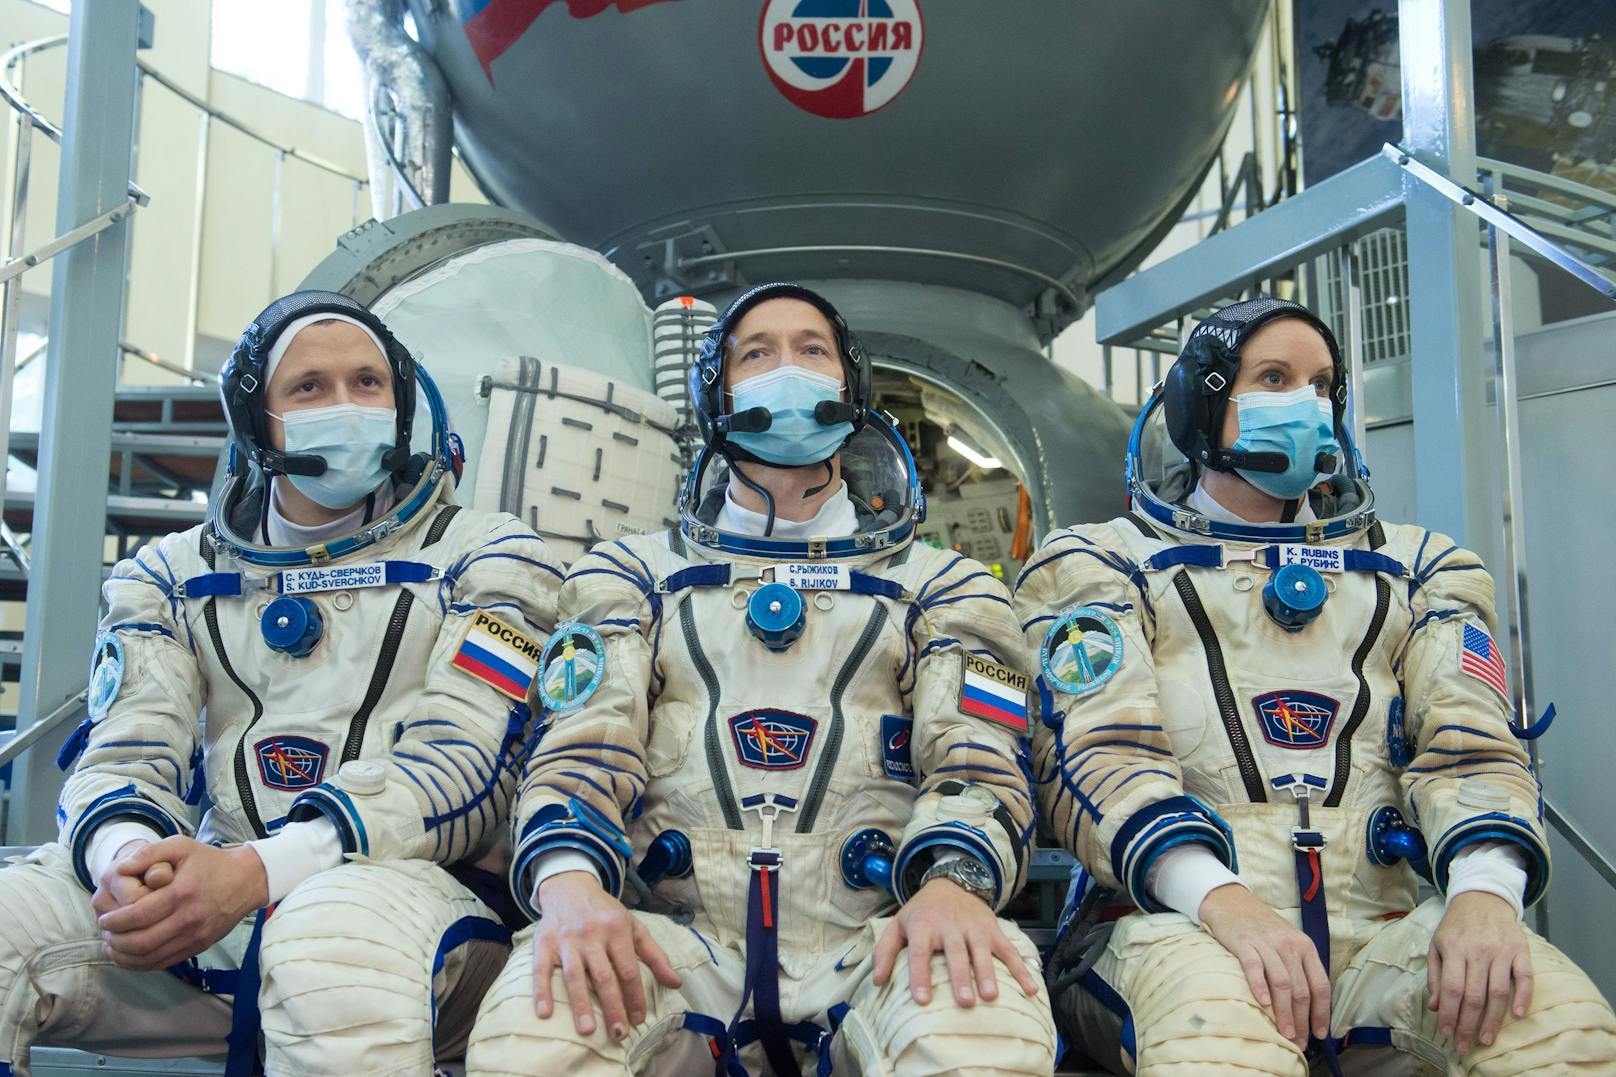 Russland will seine Astronauten als Erste impfen